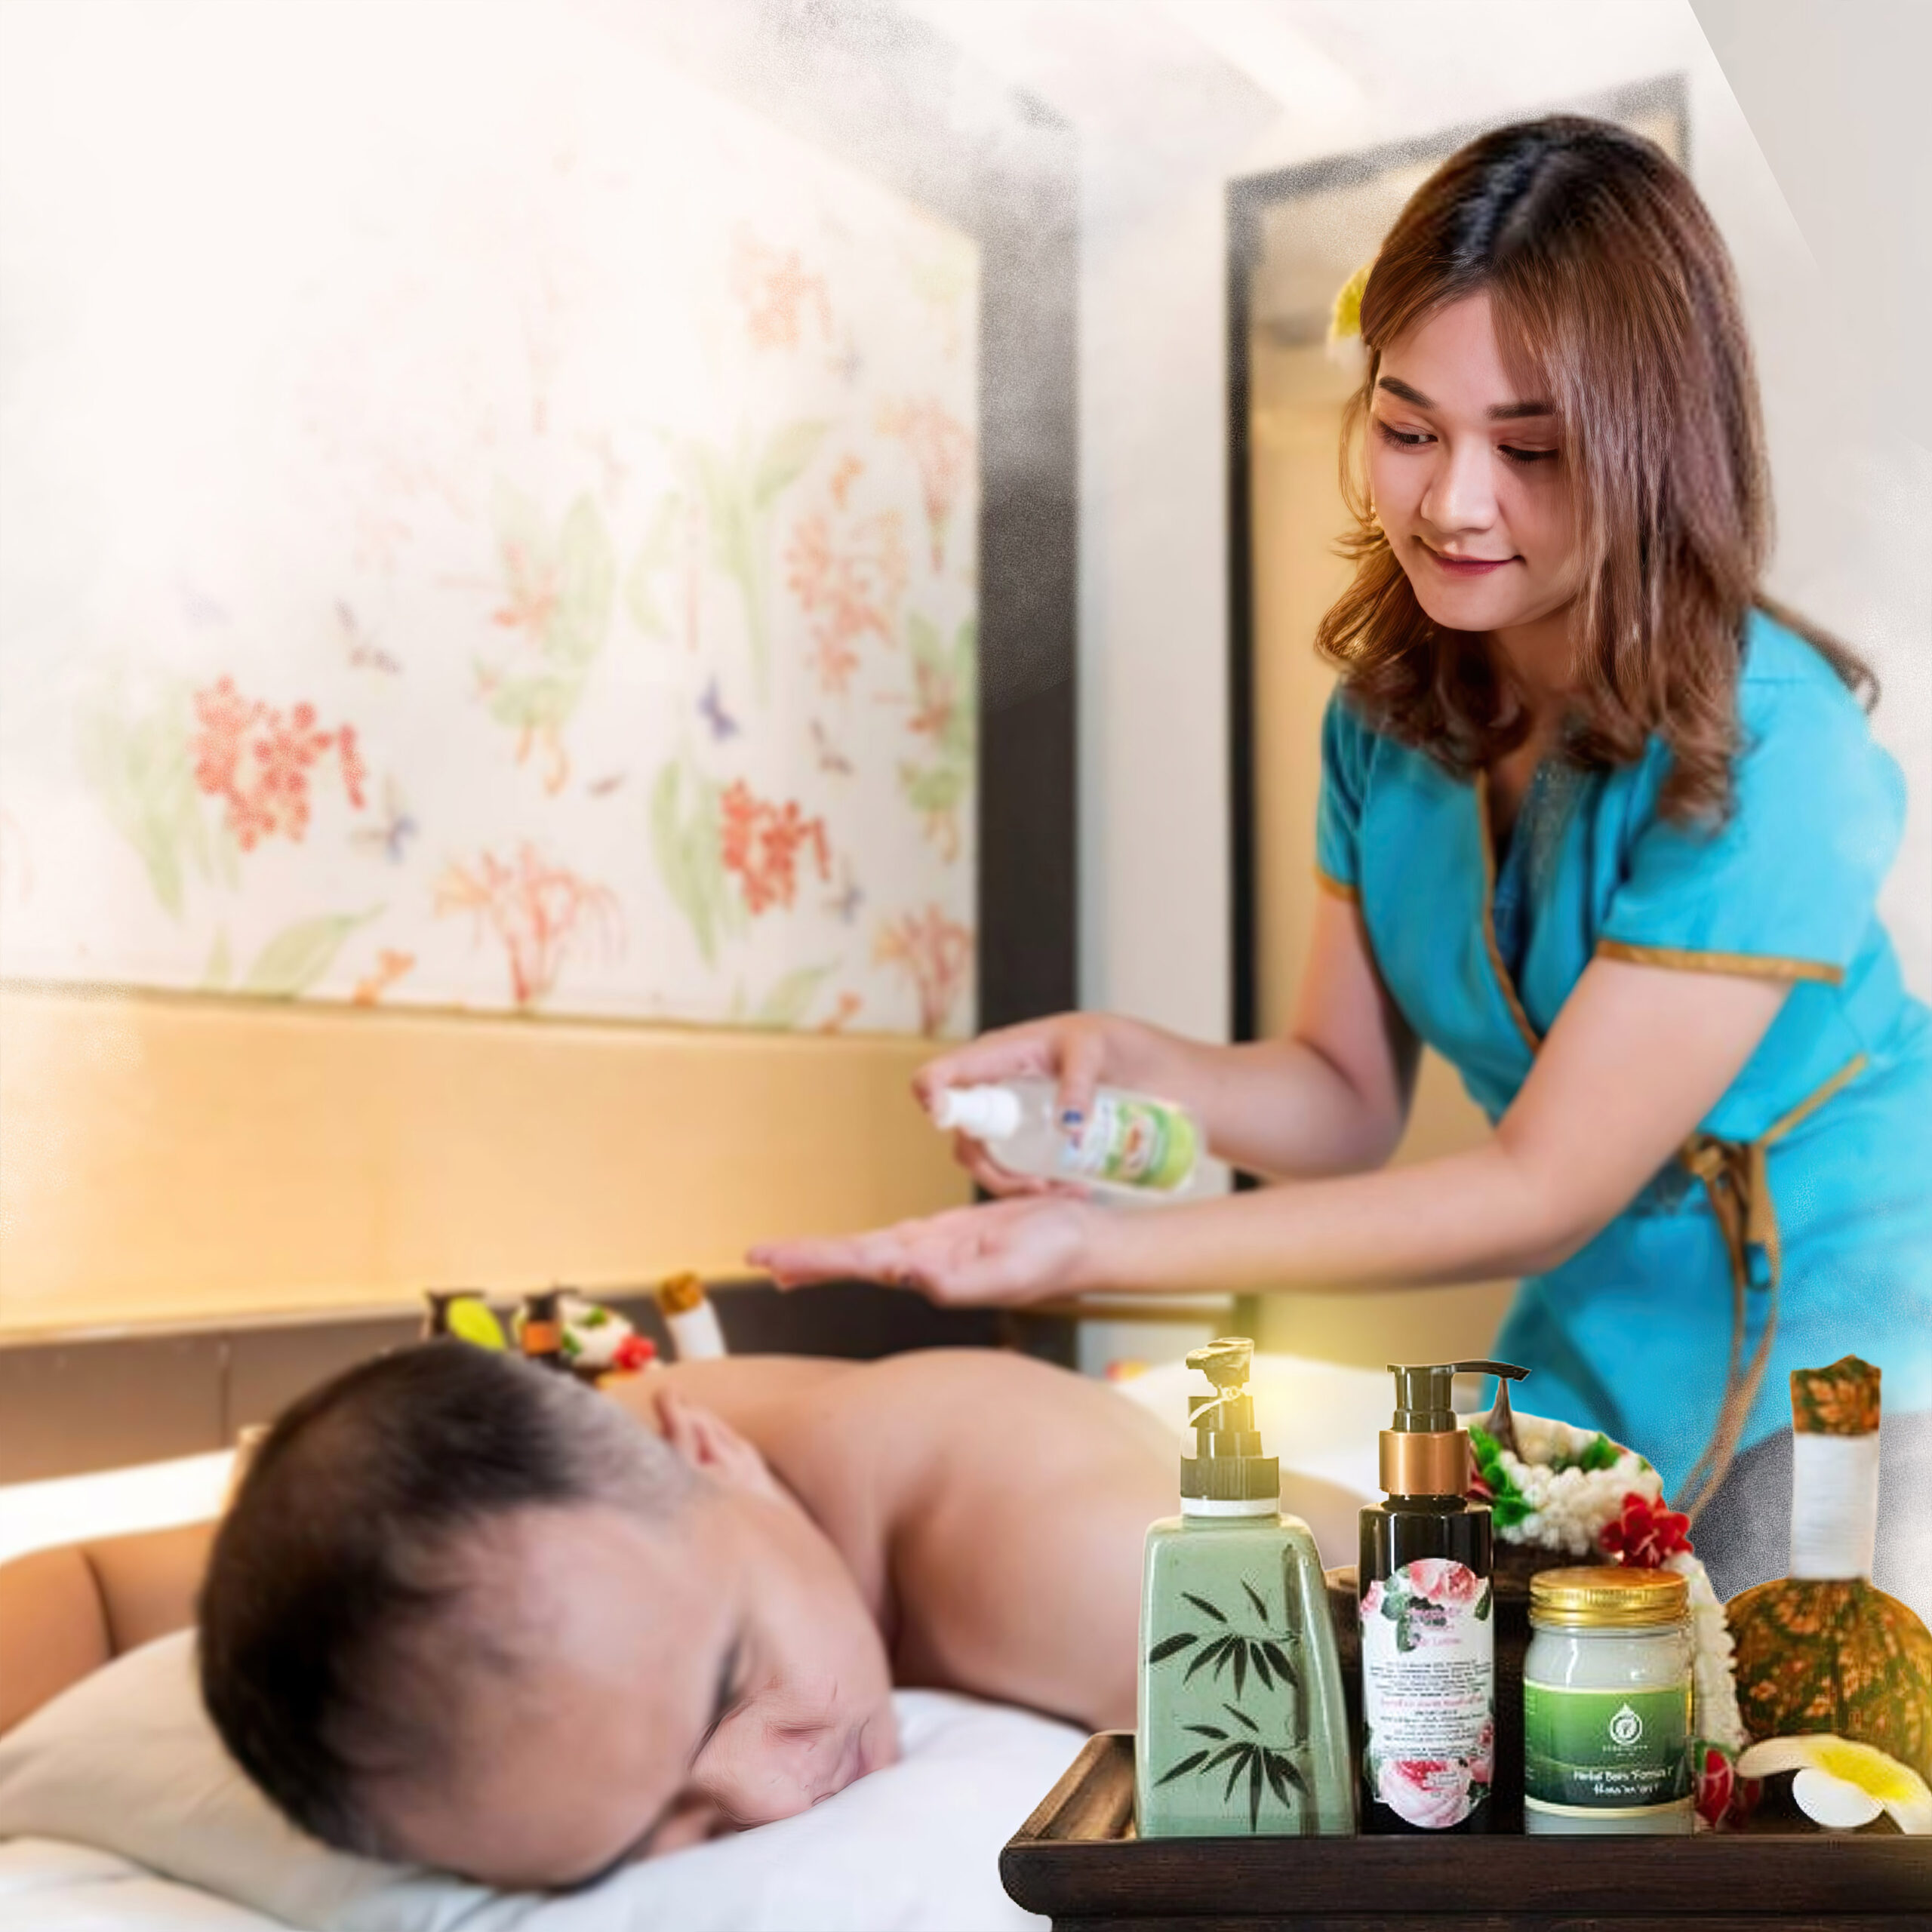 outcall massage bangkok